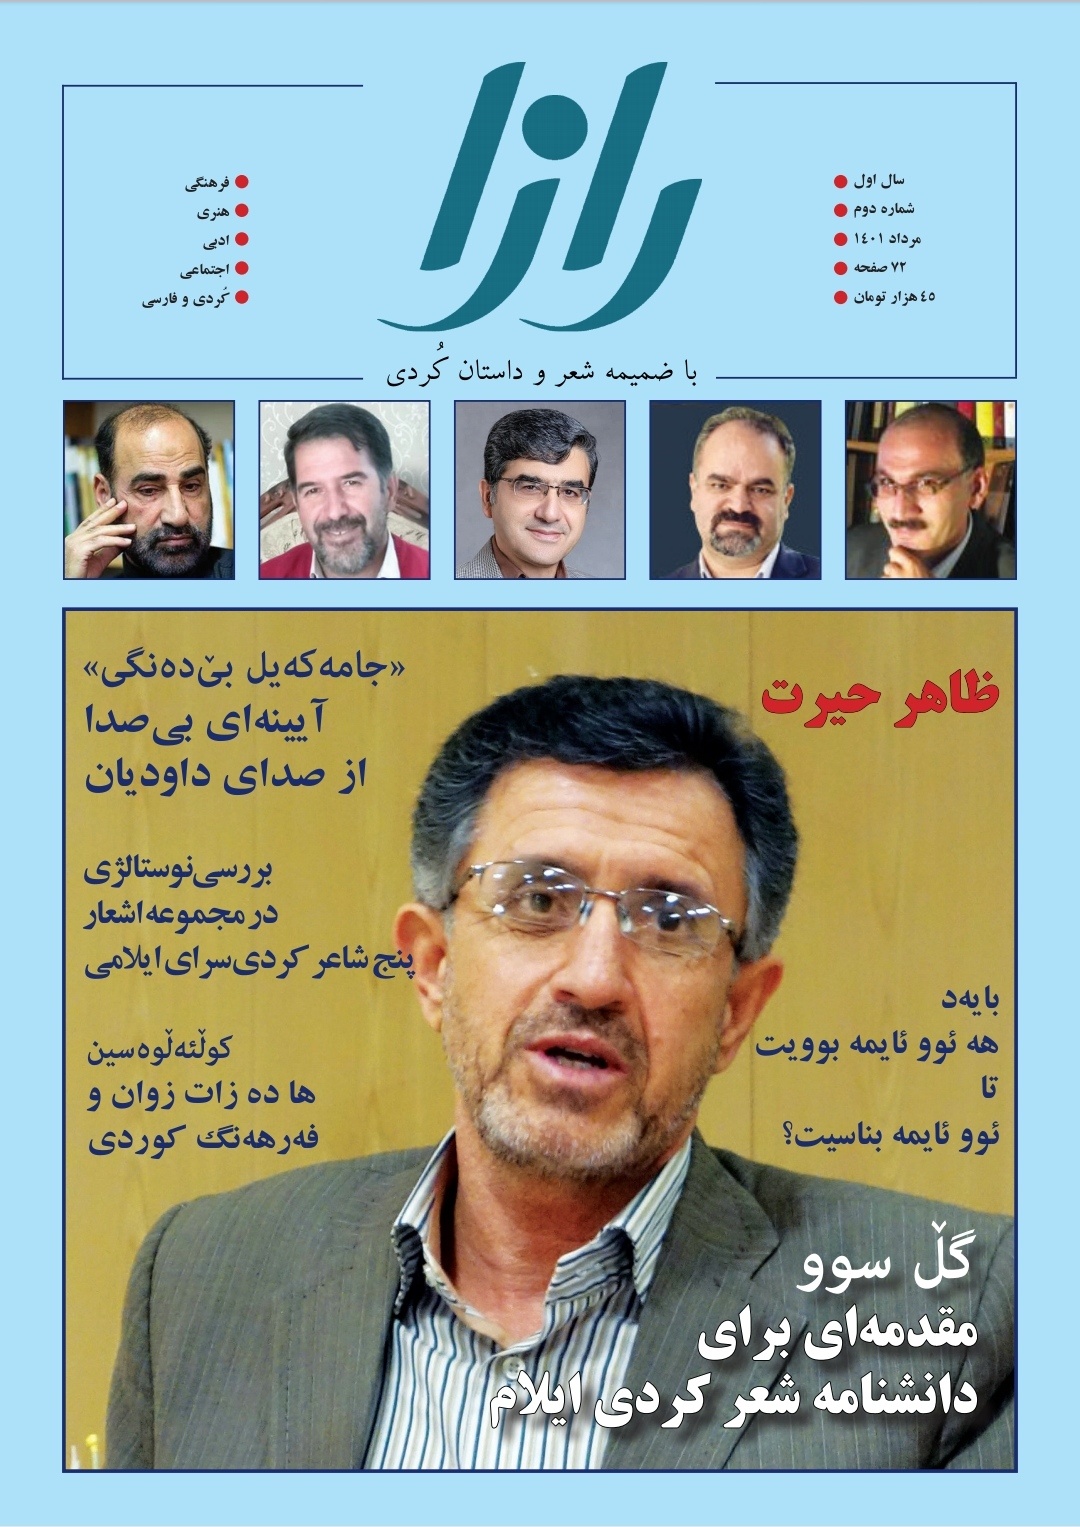 مجله کردی فارسی «رازا» در ایلام منتشر شد